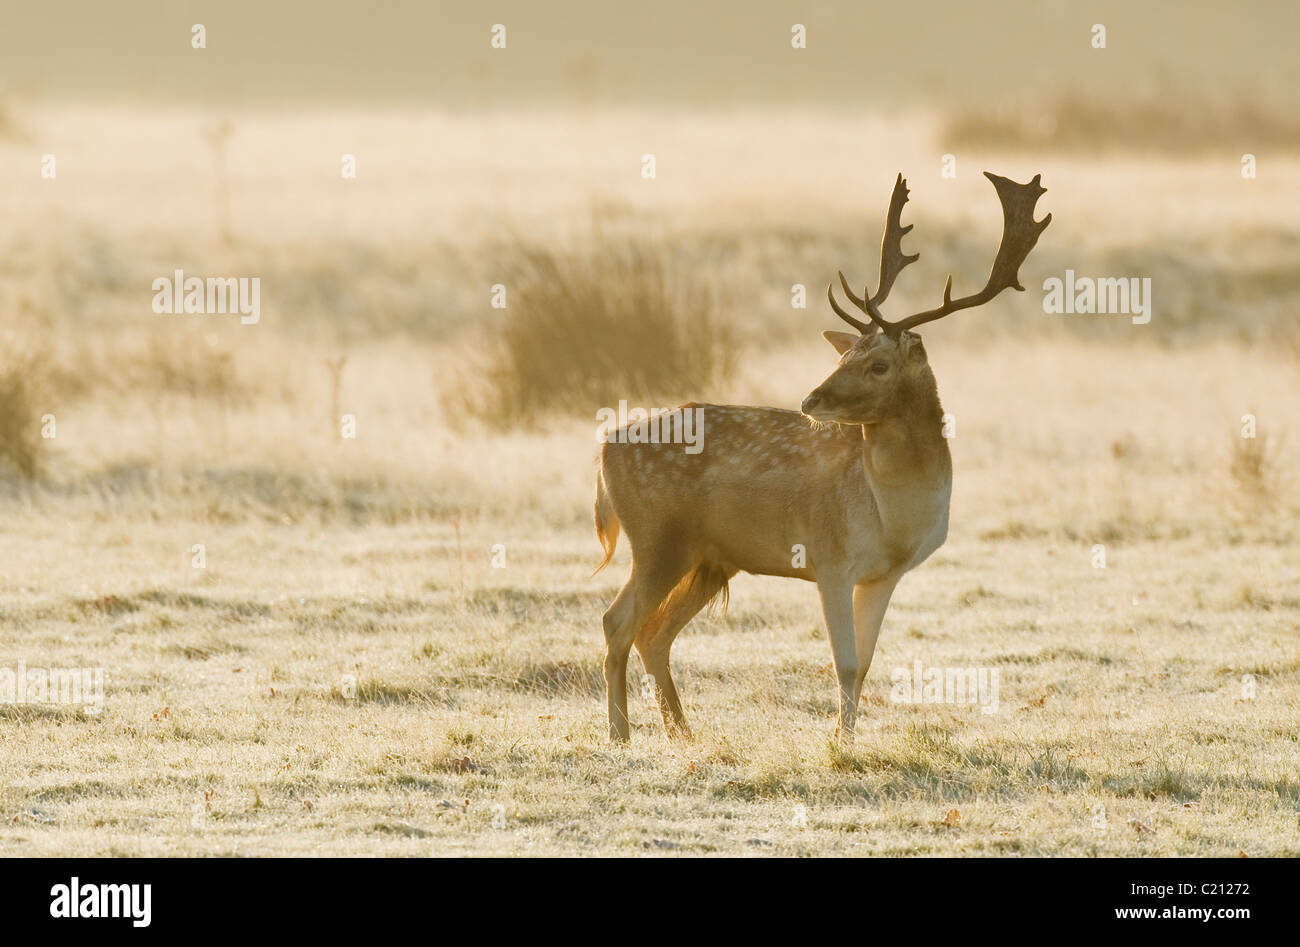 Fallow deer (Dama dama) during the rut, England, UK Stock Photo